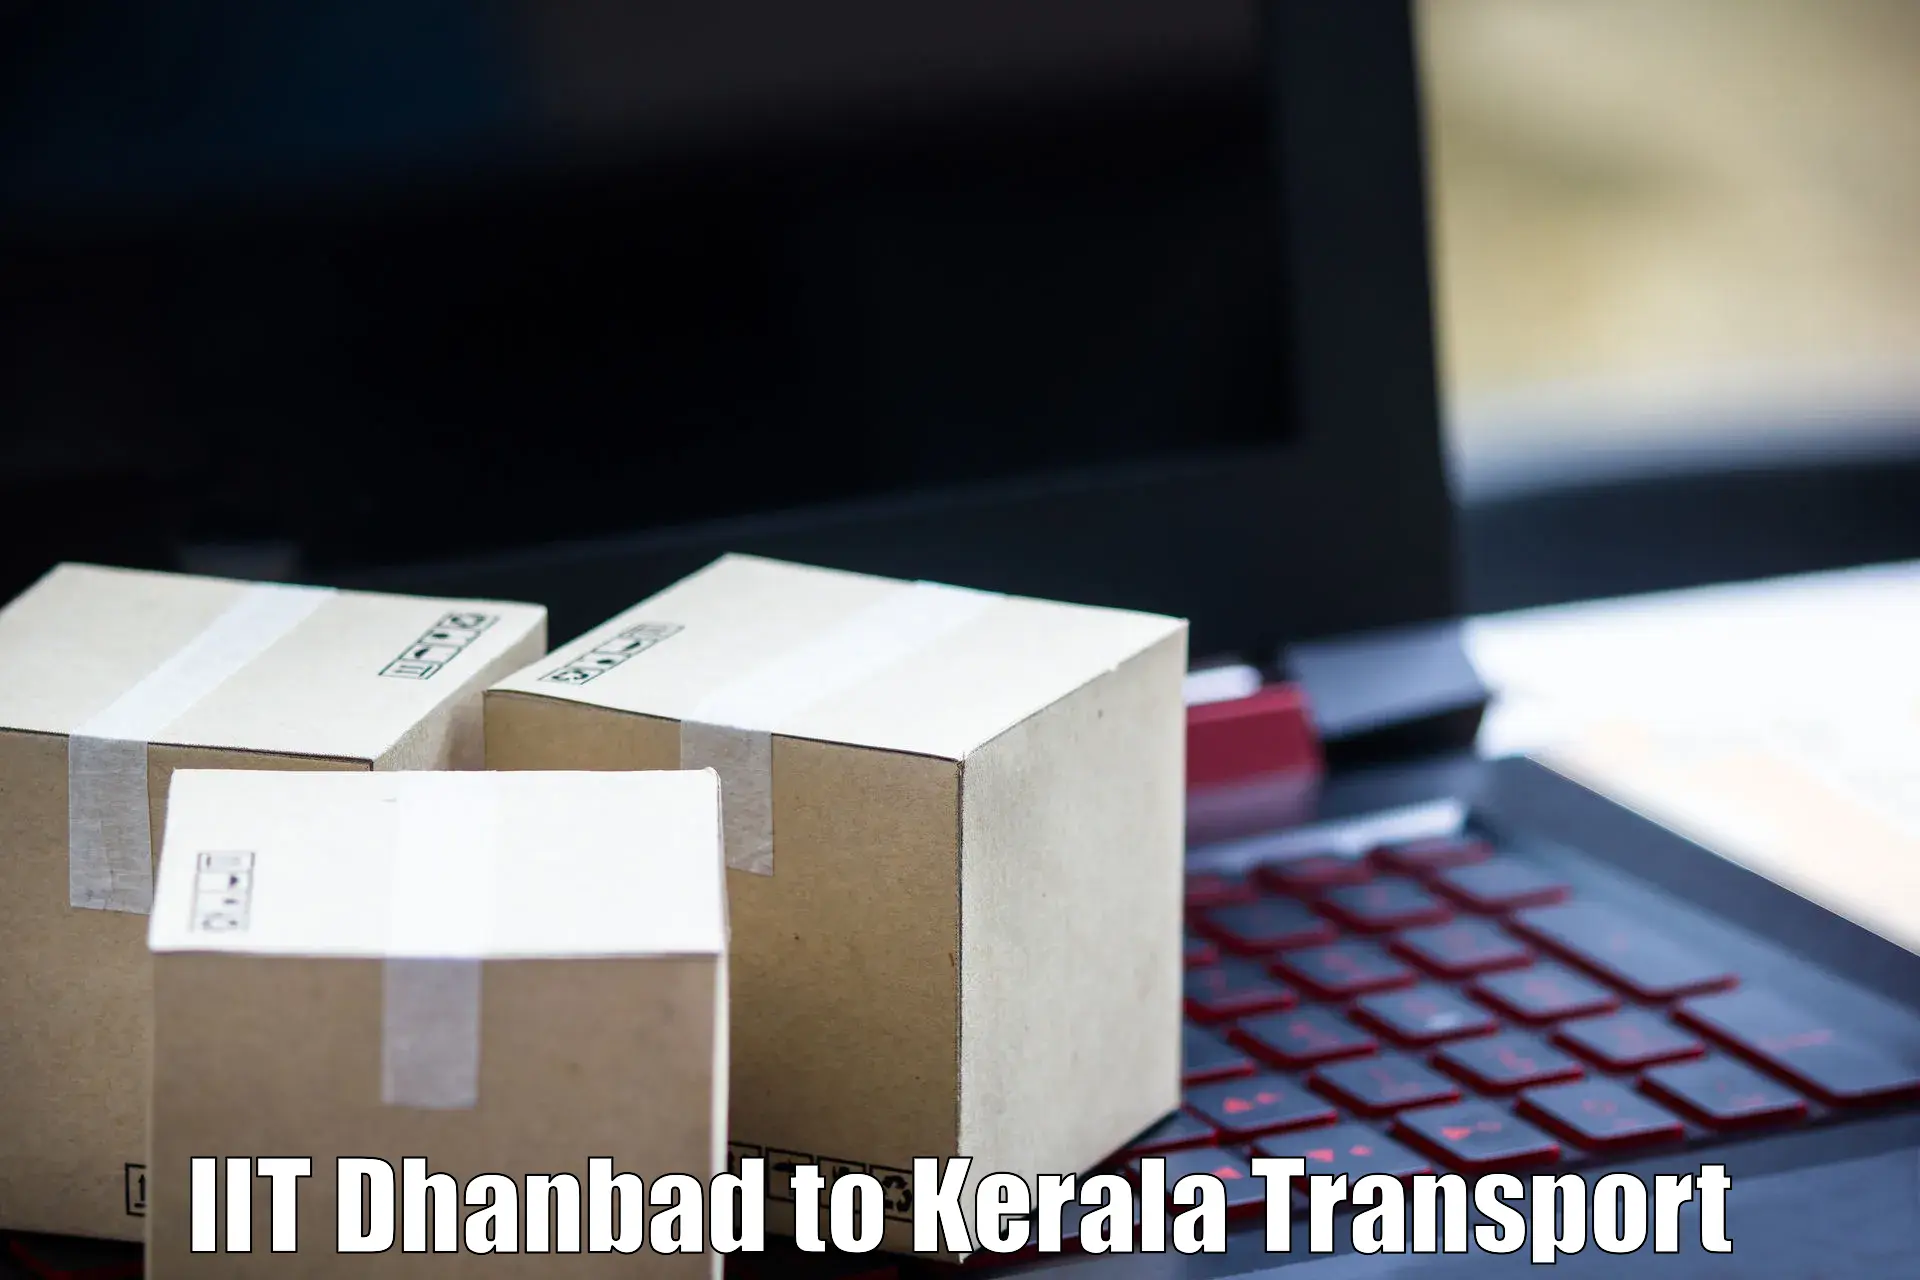 Delivery service IIT Dhanbad to Ernakulam